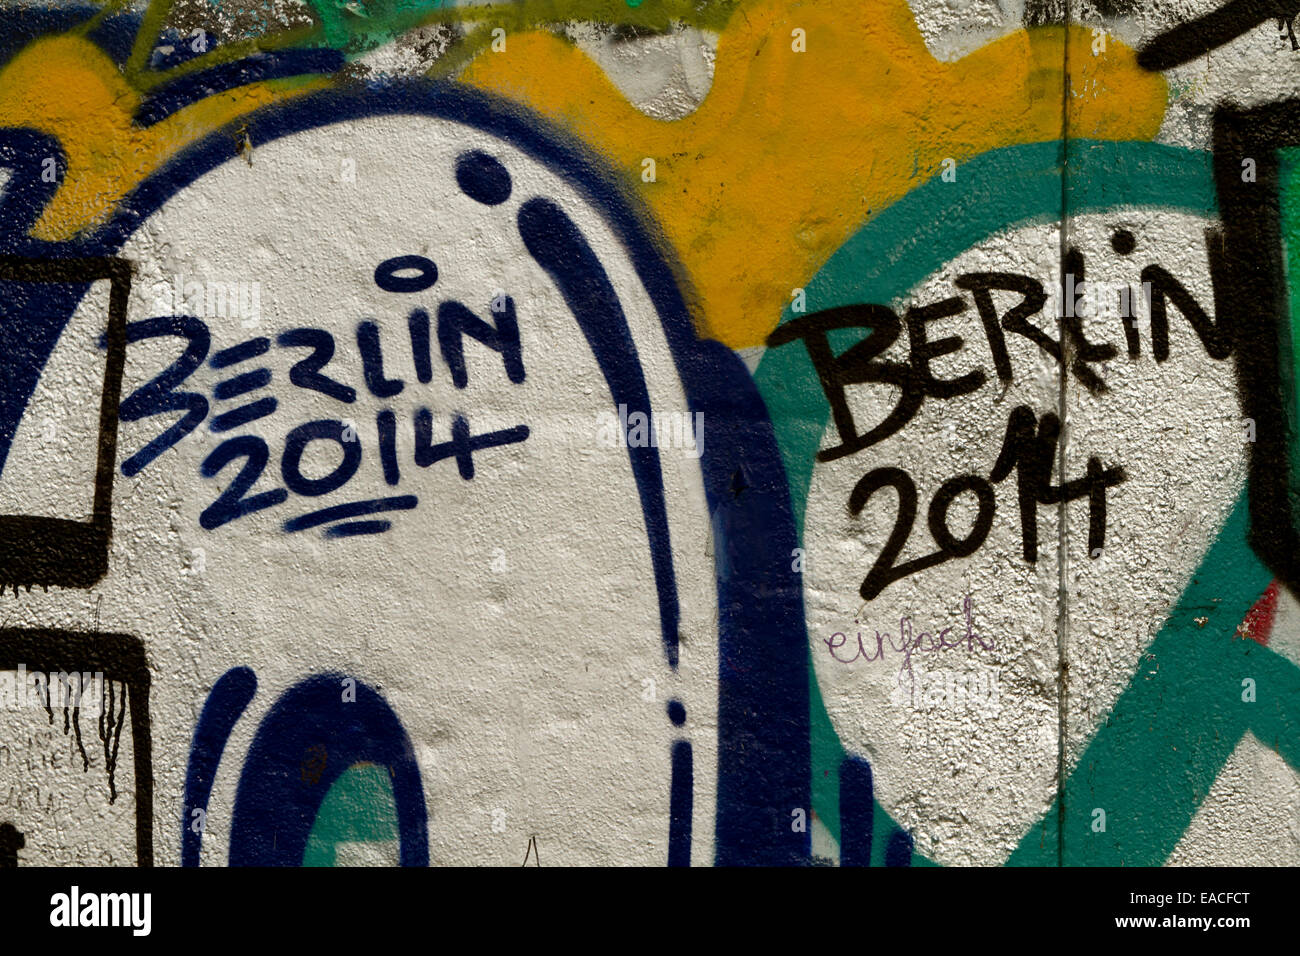 Graffiti street art Berlin 2014 wall tags letters Stock Photo